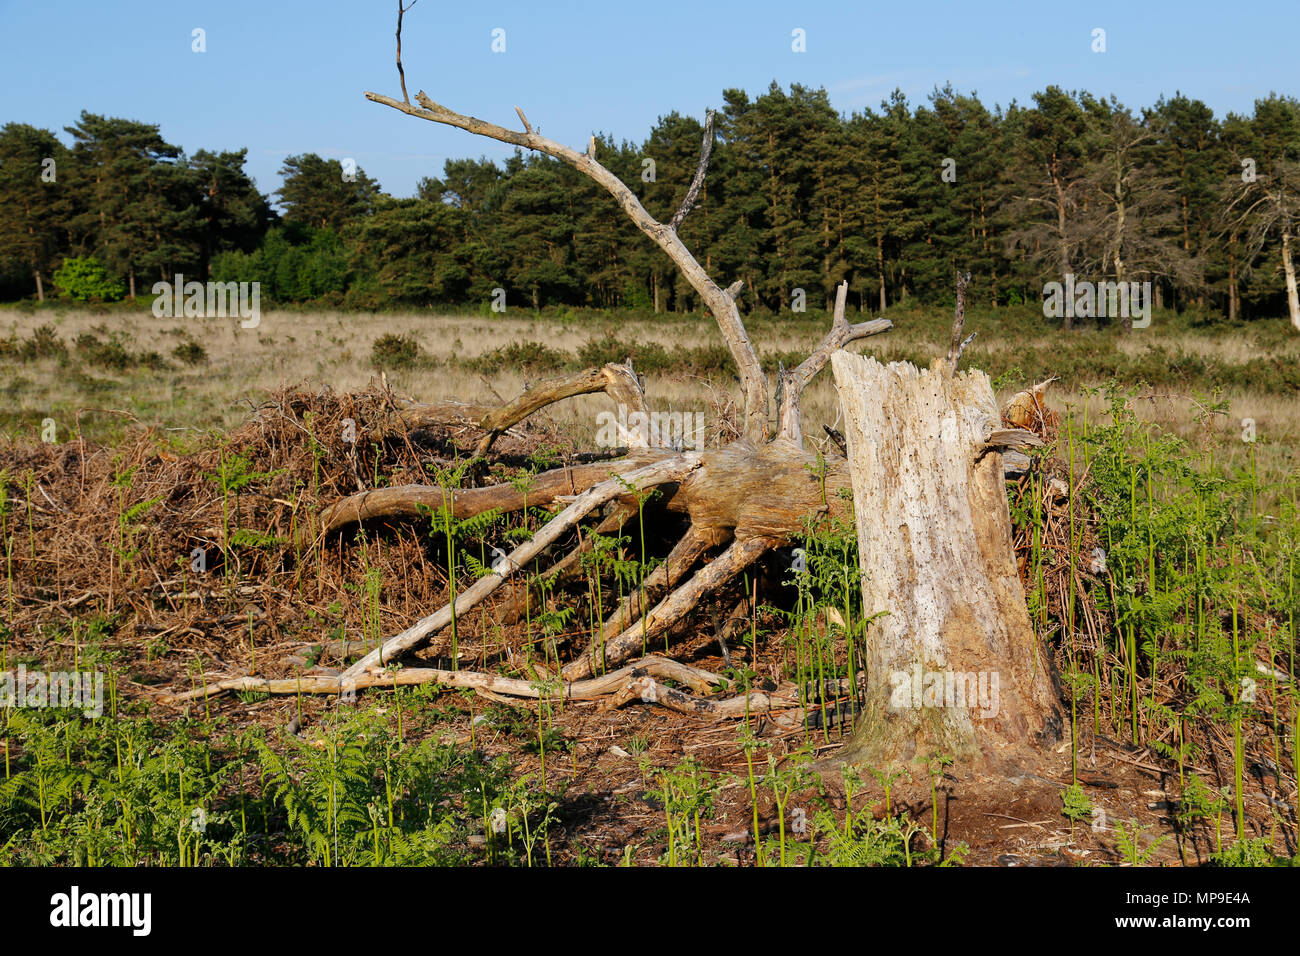 Fallen, dead tree, bleached in sunlight Stock Photo